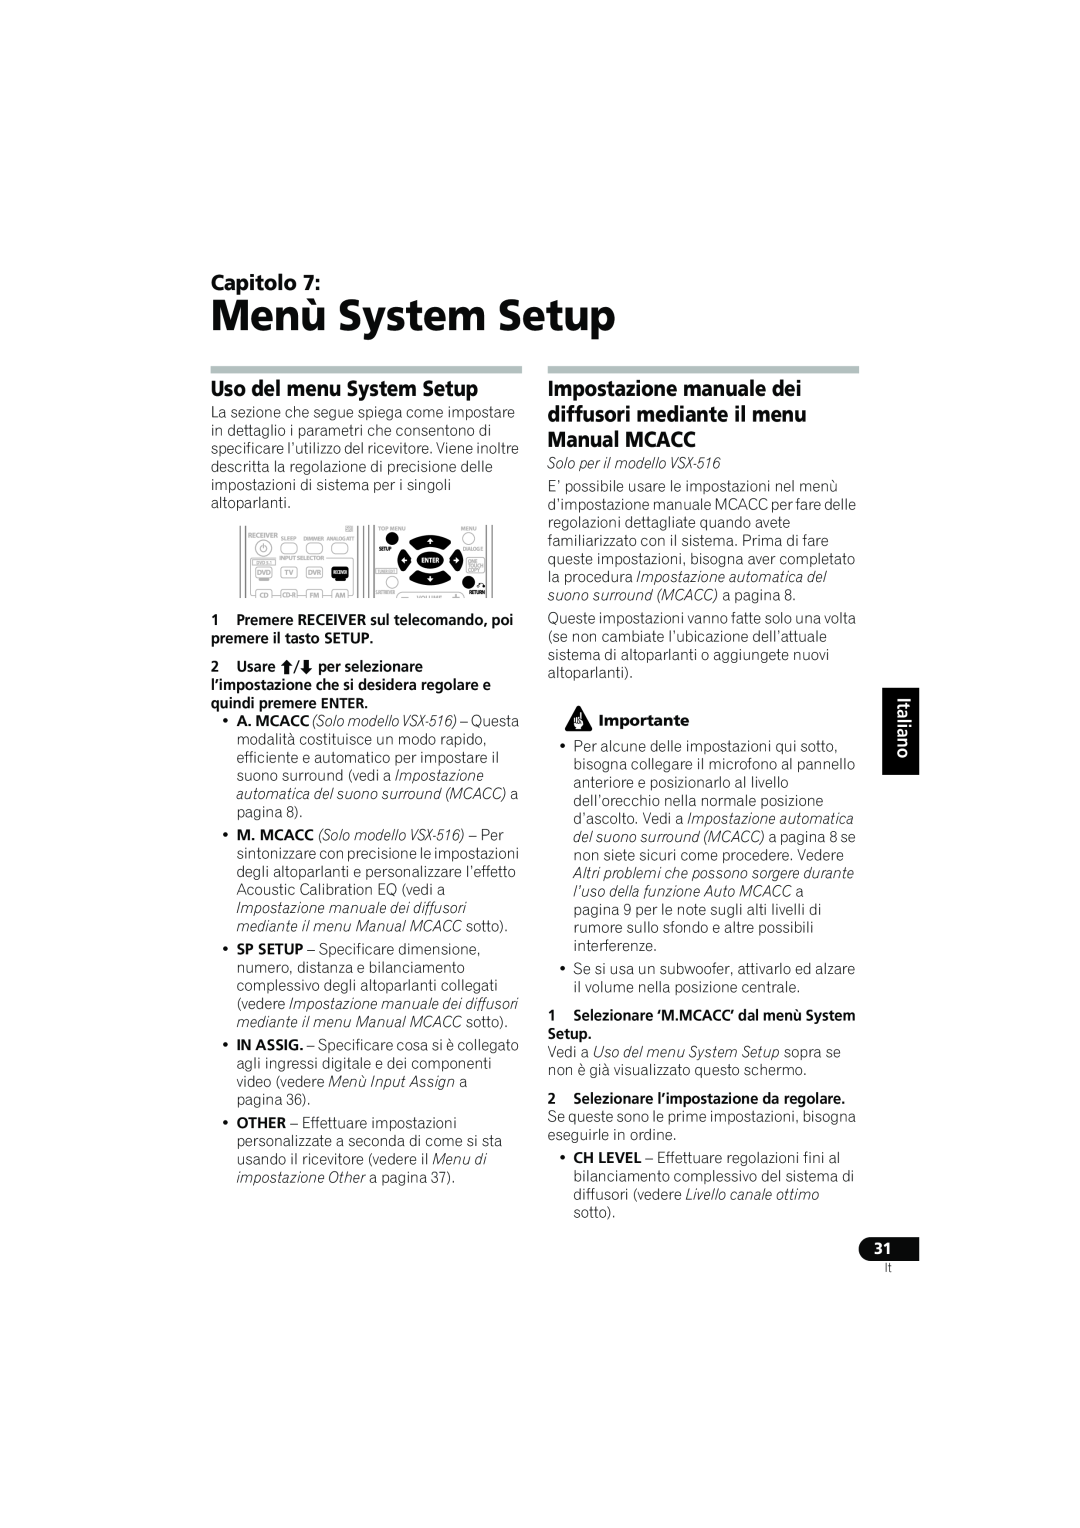 Pioneer VSX-416-S/-K, 516-S/-K manual Menù System Setup, Uso del menu System Setup, Capitolo, Solo per il modello VSX-516 